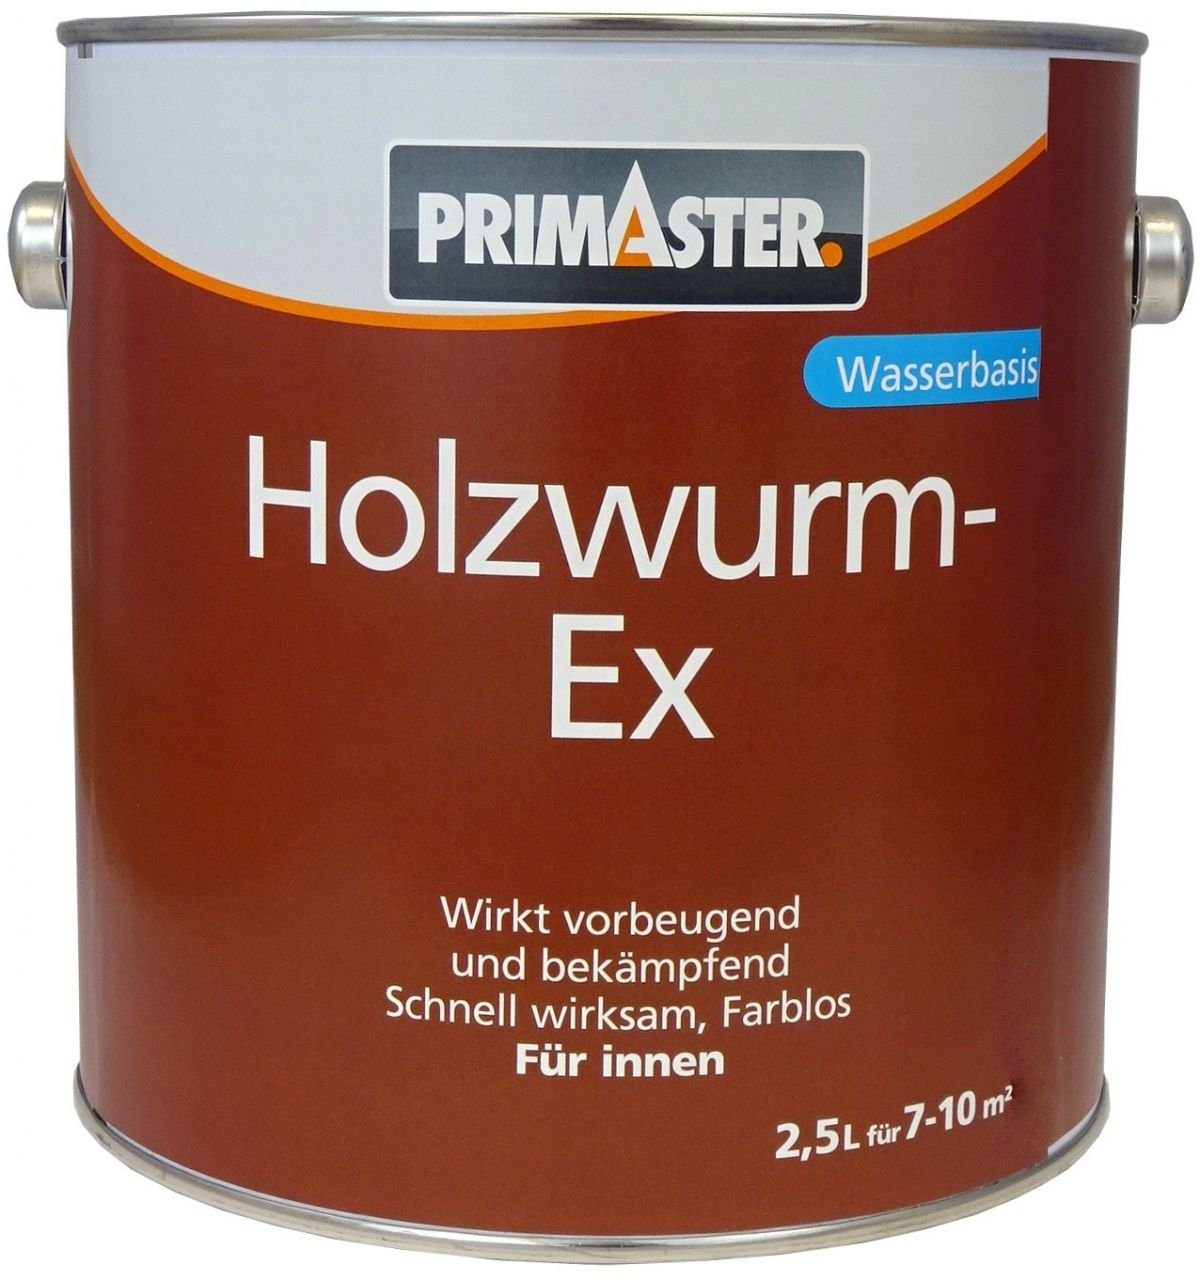 Primaster Holzschutzlasur Primaster Holzwurm EX 2,5 L